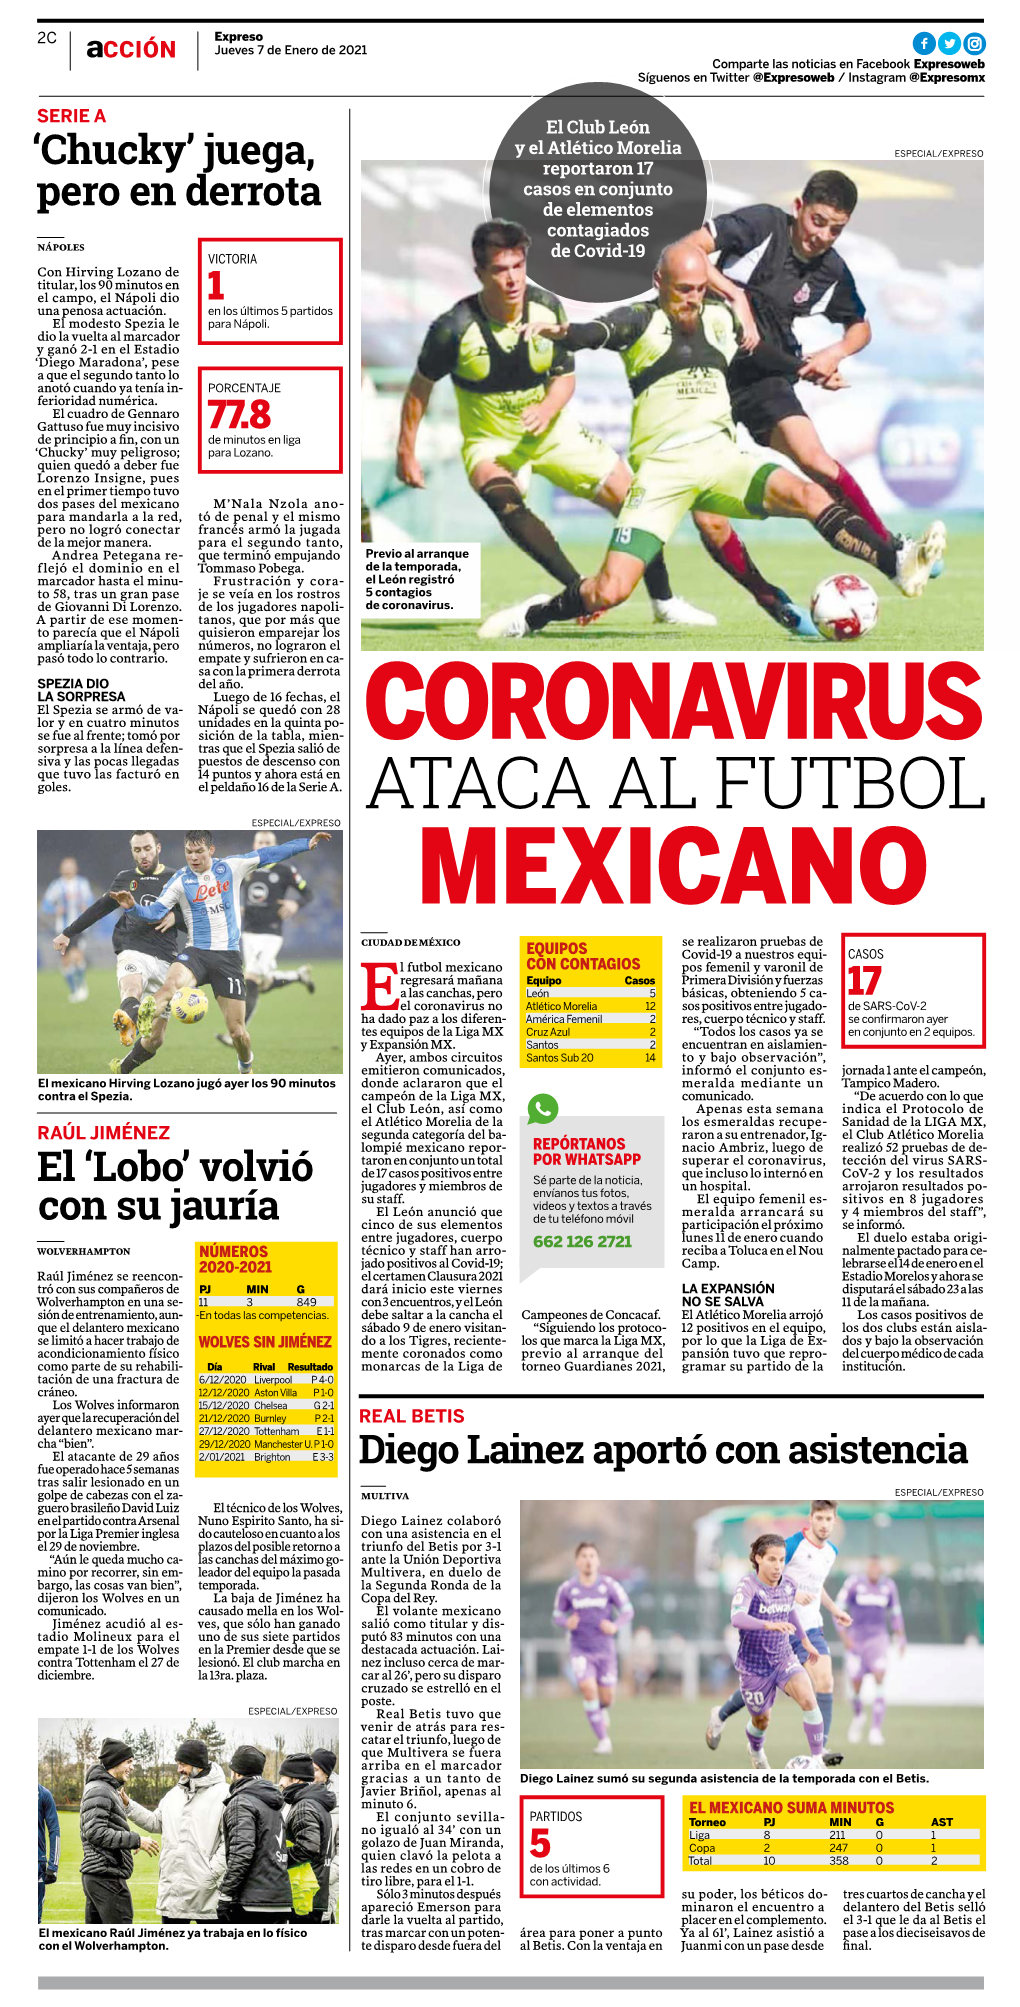 Ataca Al Futbol Especial/Expreso Mexicano